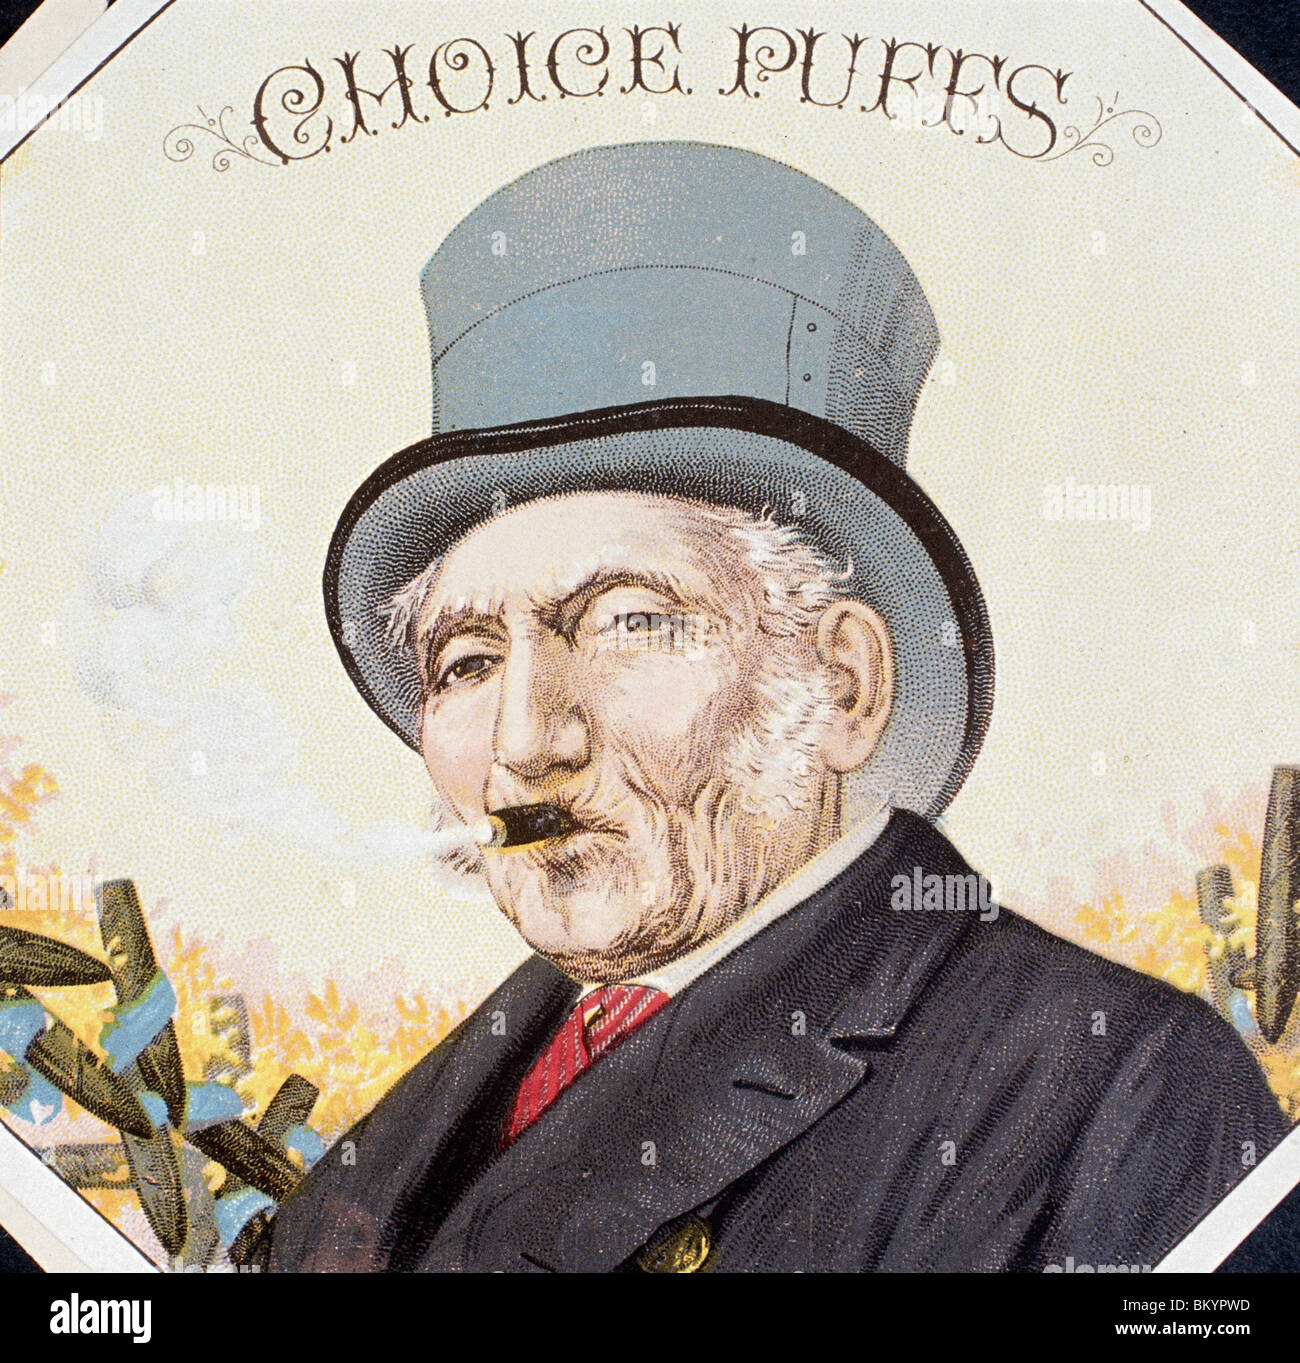 Choix bouffées, étiquettes de boîtes à cigares, 19e siècle Banque D'Images